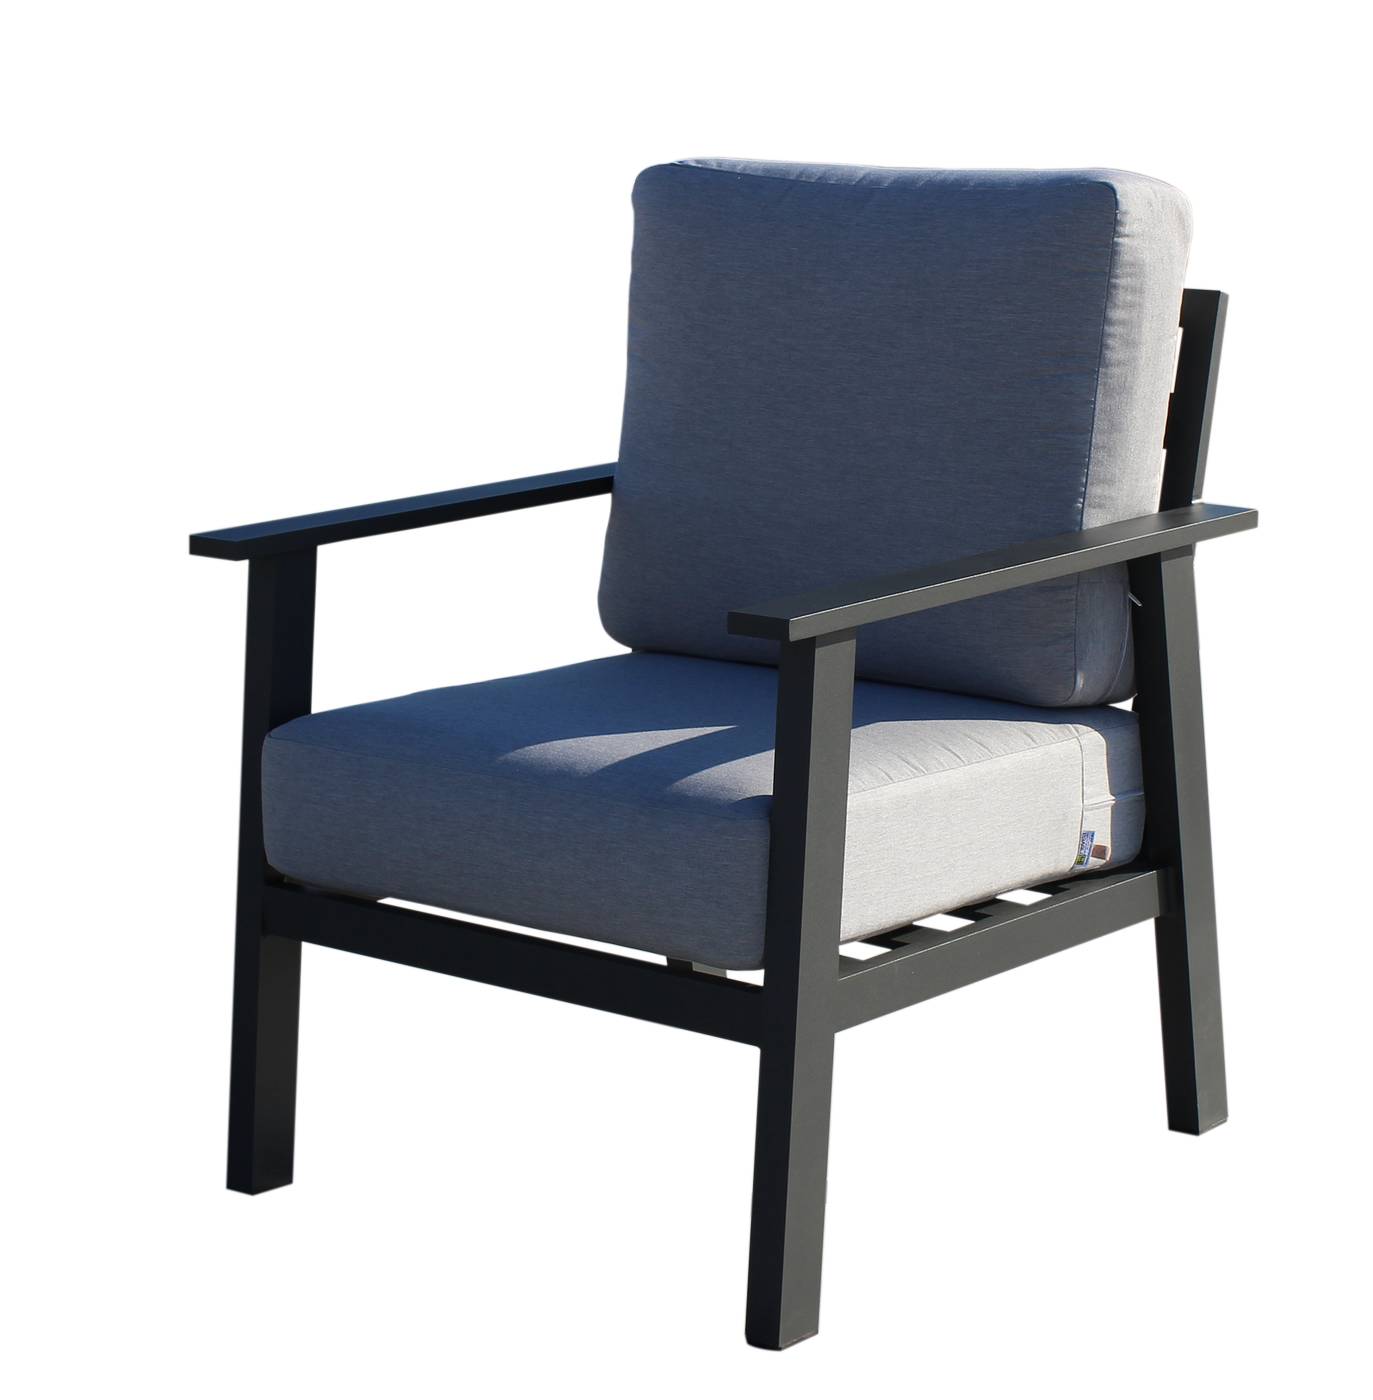 Set Aluminio Eliot-7 - Conjunto aluminio: sofá 2 plazas + 2 sillones + mesa de centro. Fabricado de aluminio en color blanco o antracita.